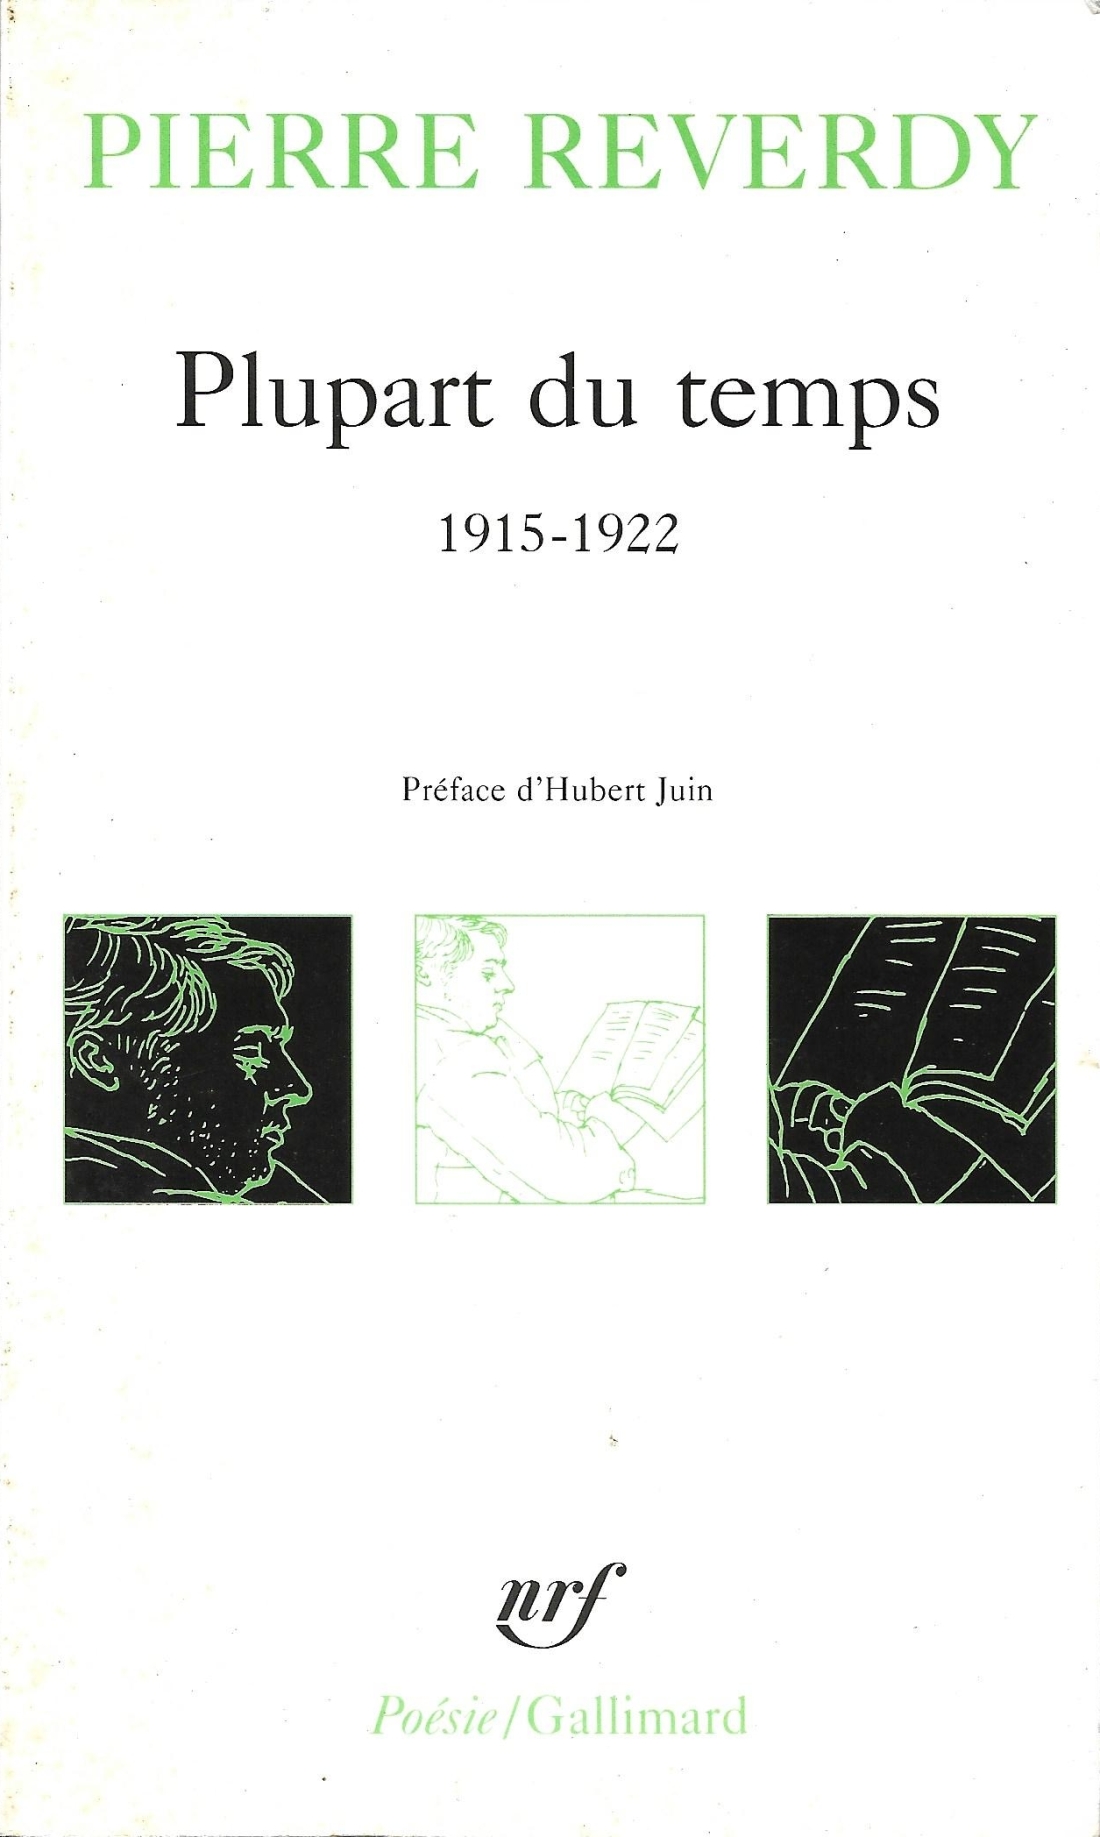 Pierre Reverdy, Plupart du temps